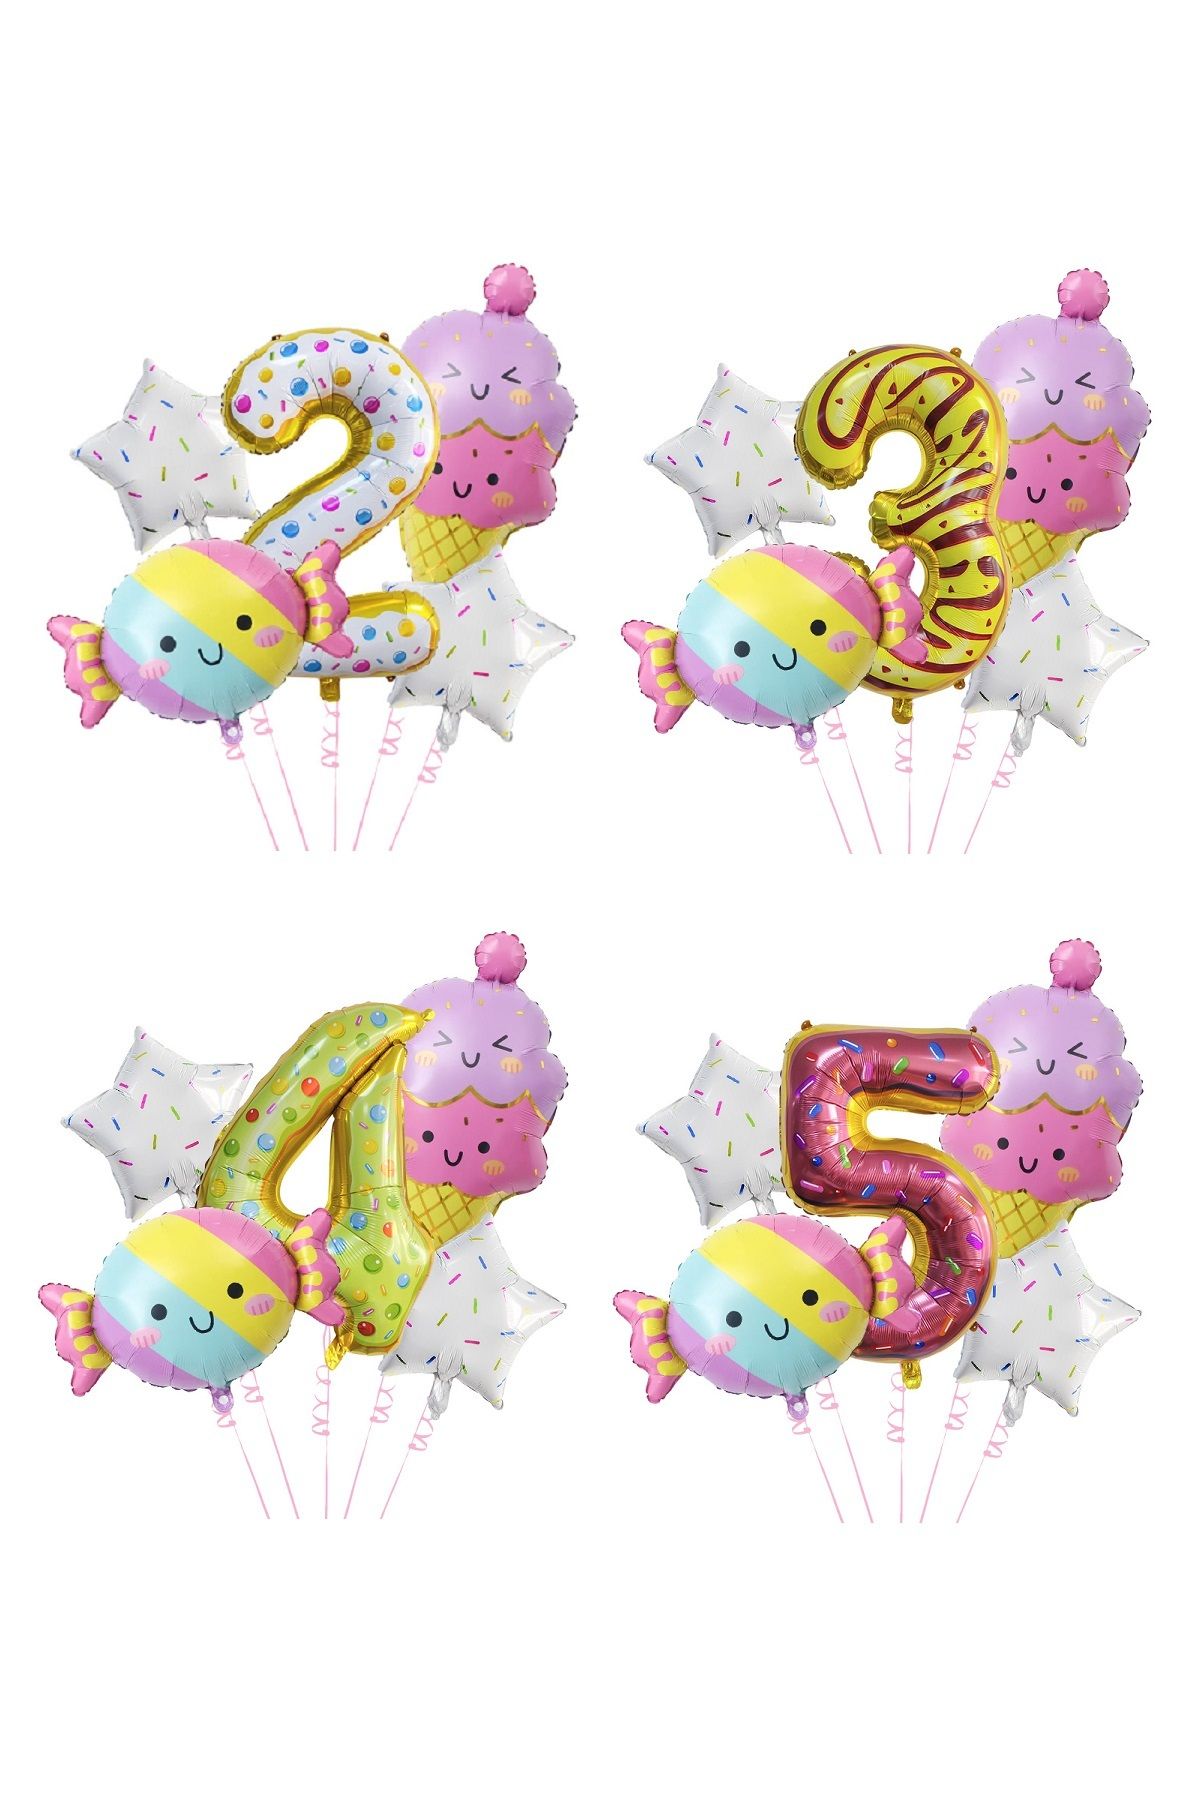 PartiMix Şeker Donut Ve Dondurma Konsepti 2 3 4 5 Yaş Çocuk Doğum Günü Parti Süsü Balon Seti Folyo Balonları